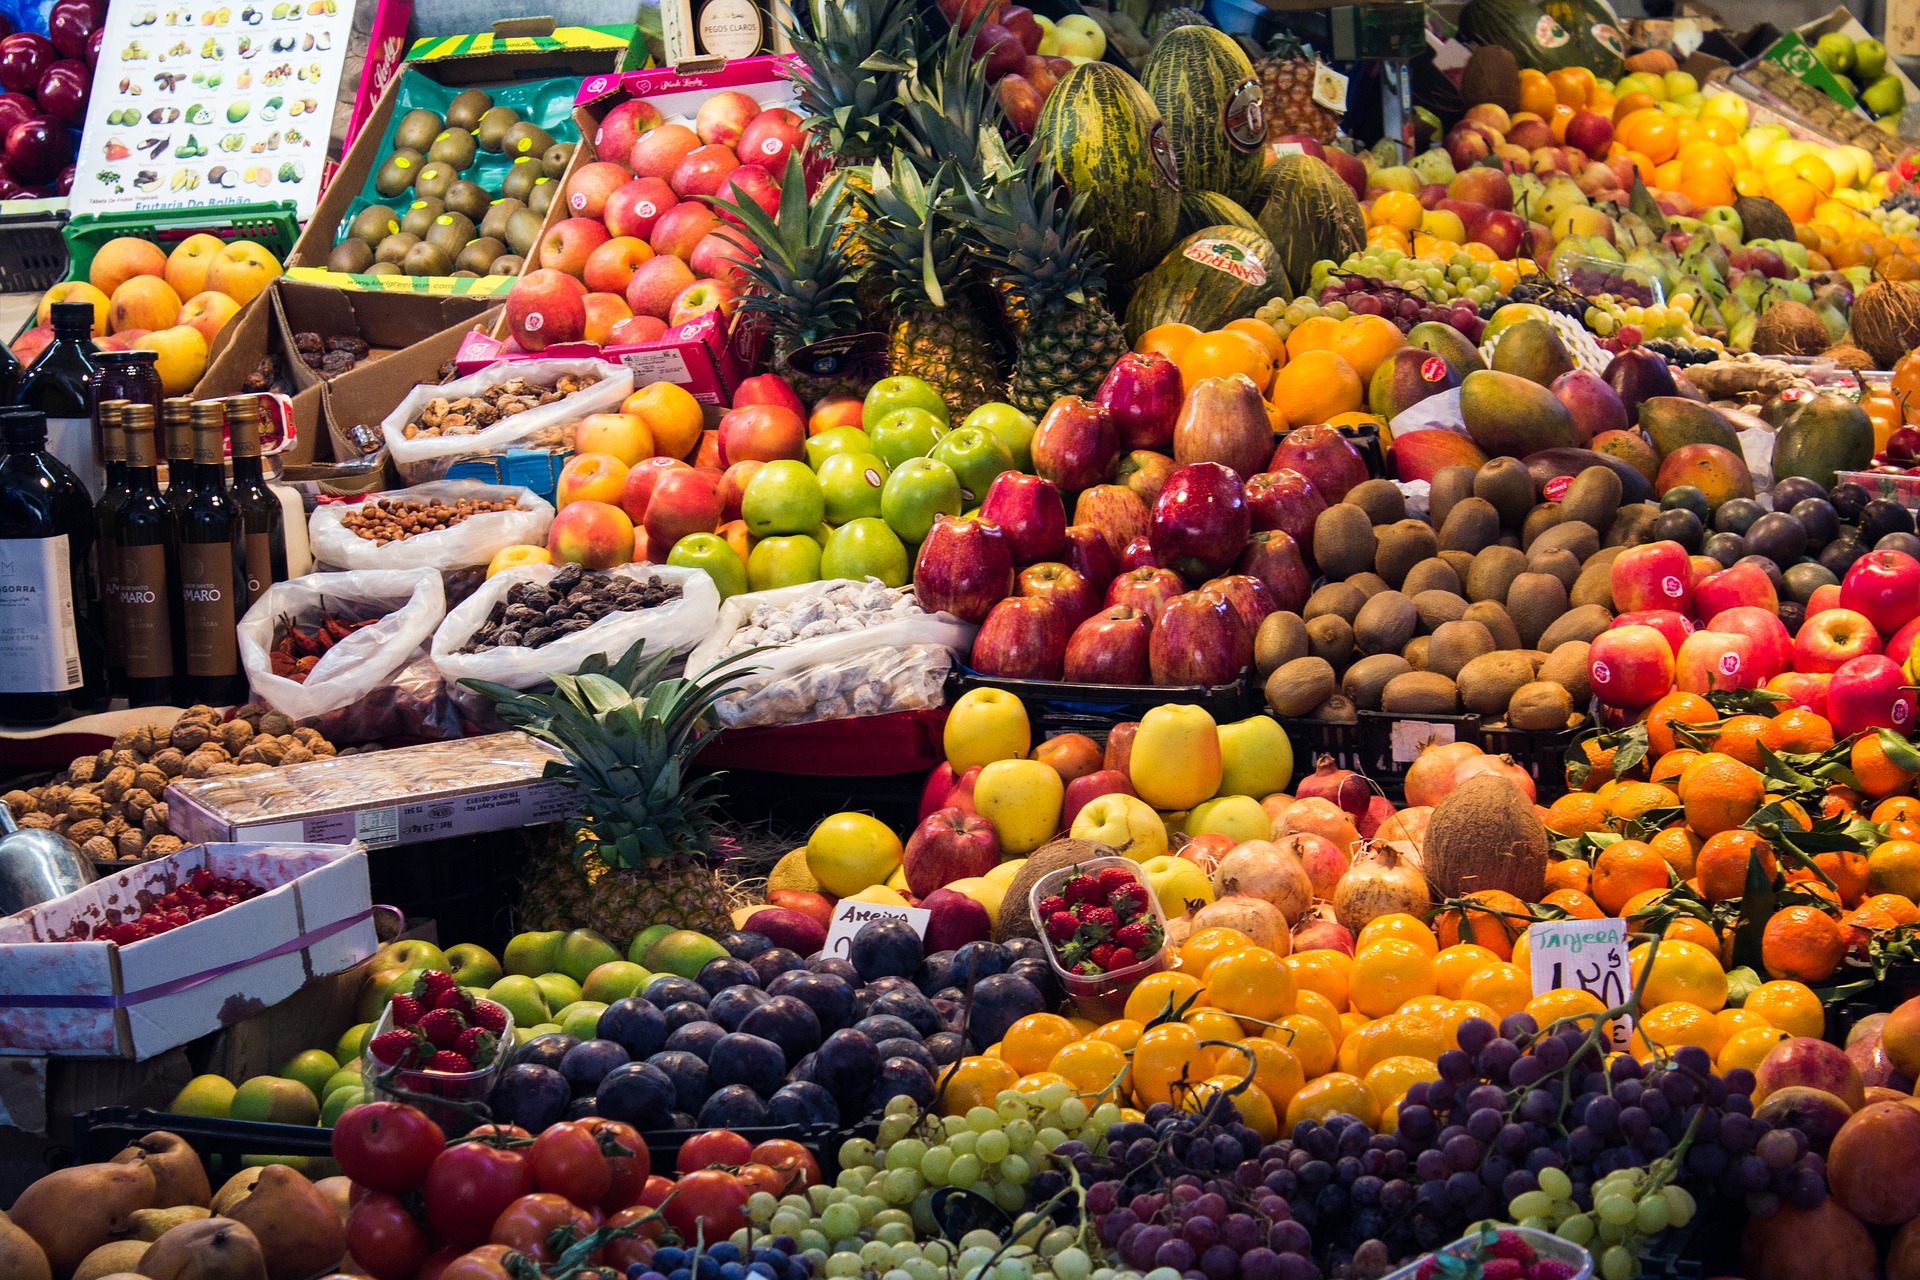 Frisches Obst auf dem Basar kaufen in Marrakesch während des Kurz Trips in Marokko